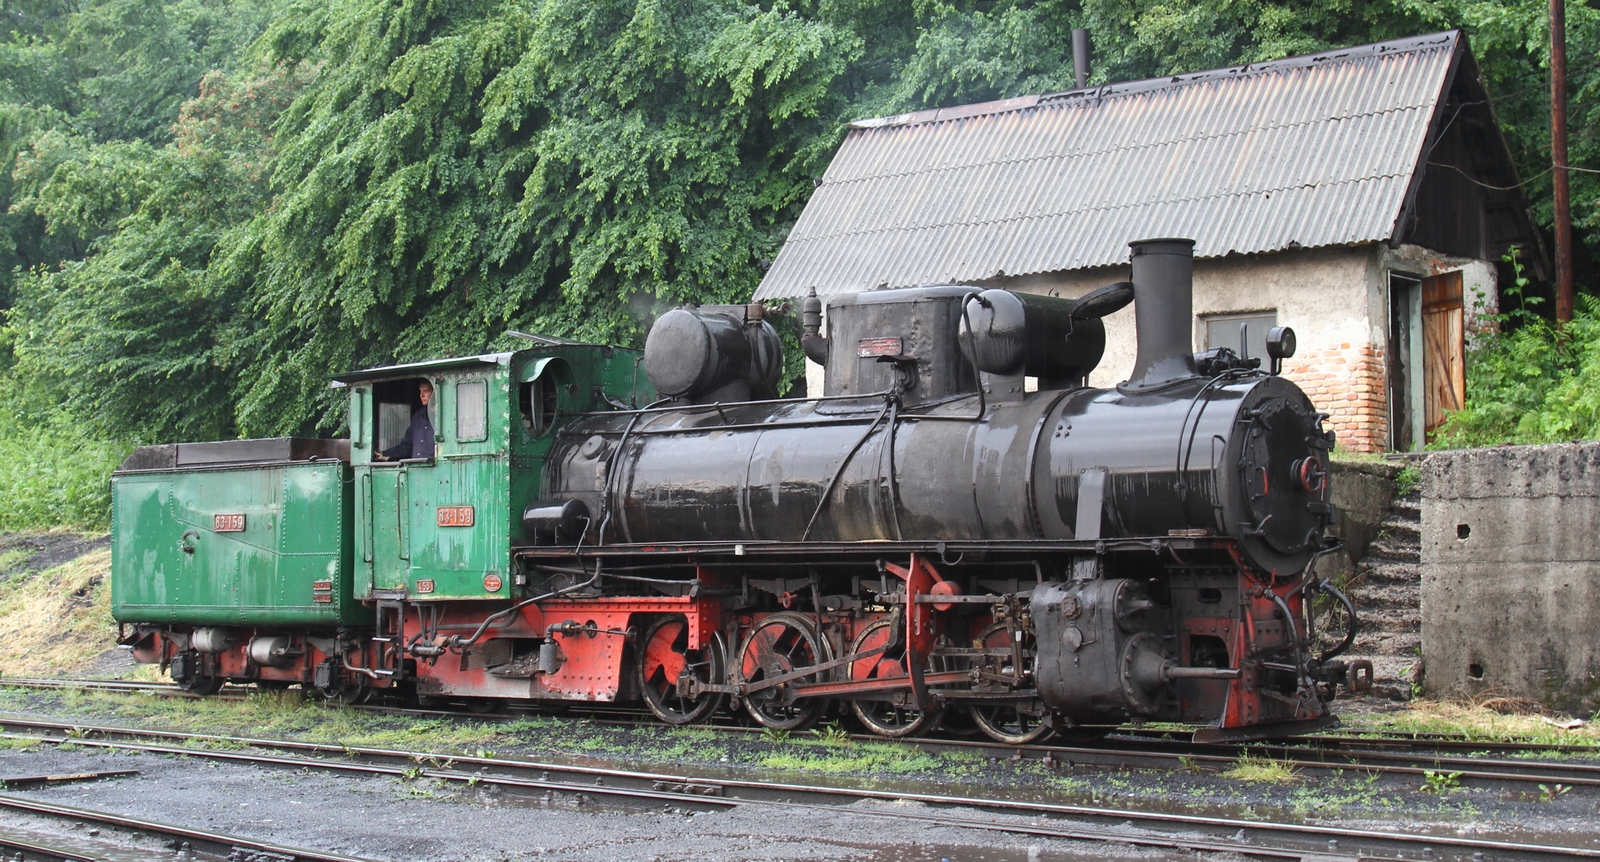 83-159 of the Banovići coal railway in June 2016 in Oskova